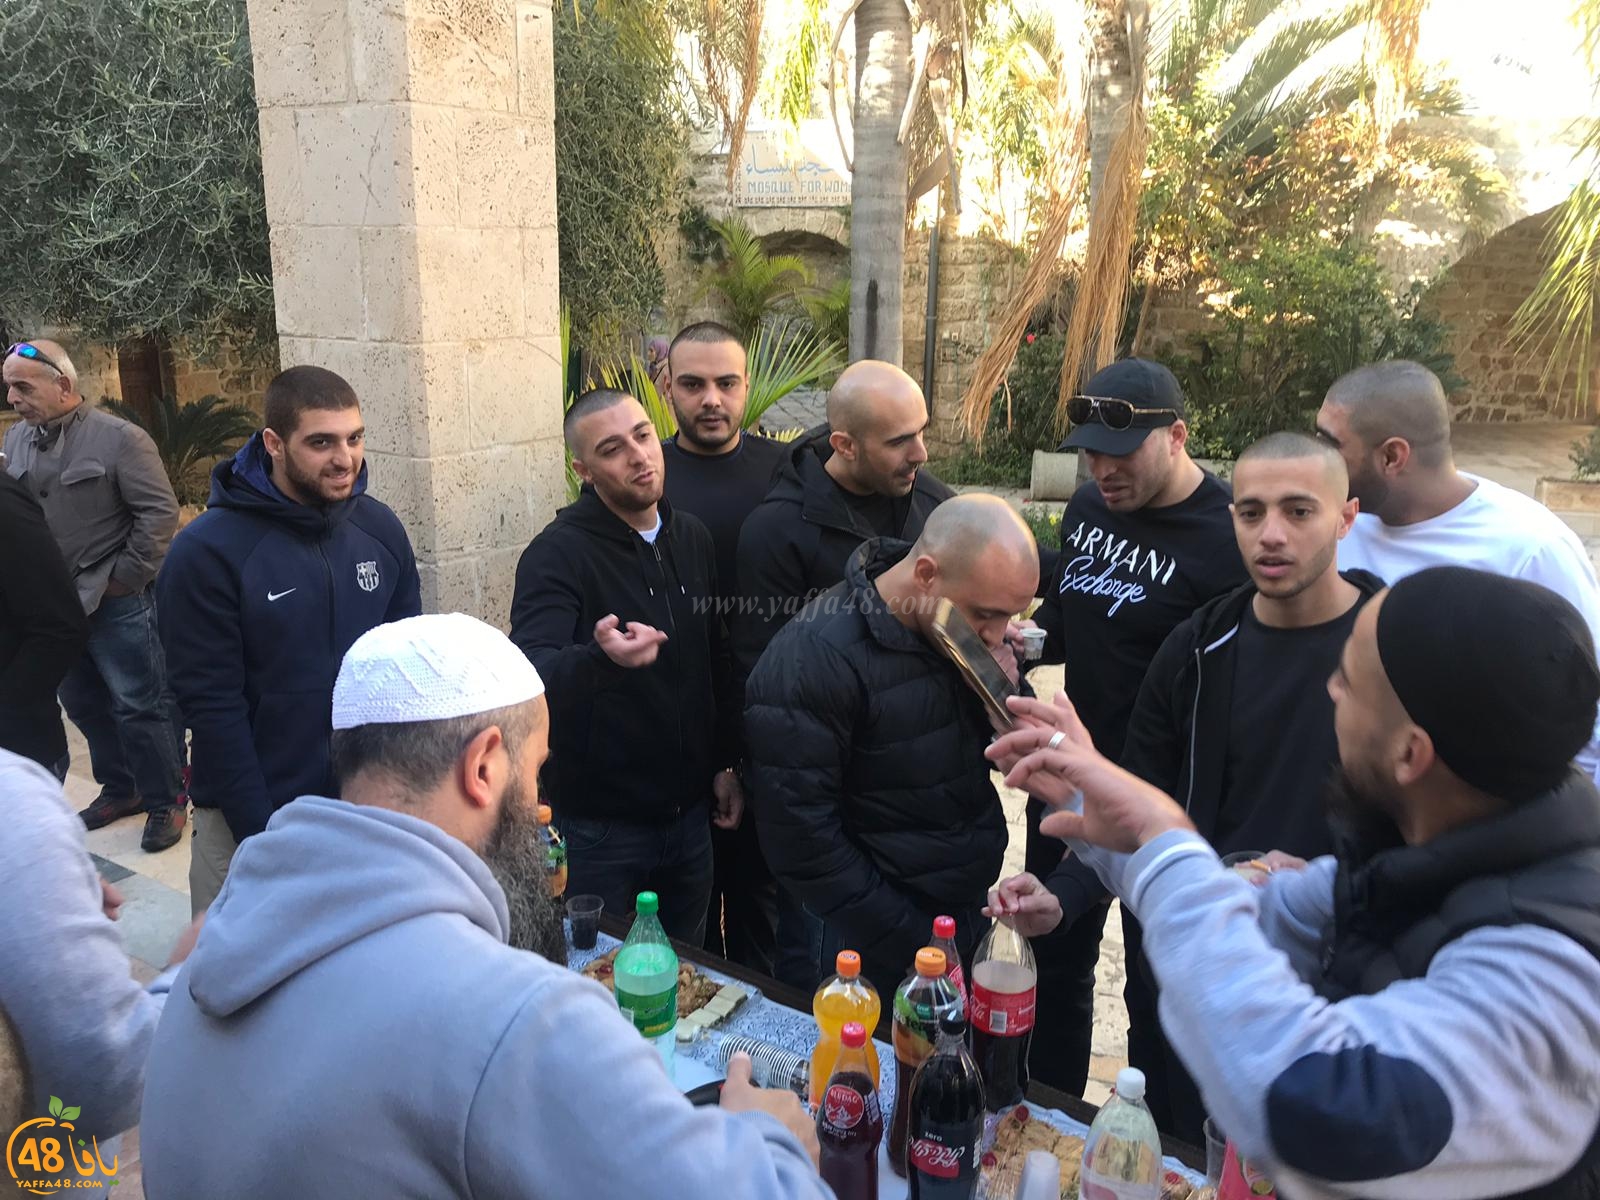  الصلح خير - عقد الصلح بين عدة عائلات في مسجد يافا الكبير بالمدينة 